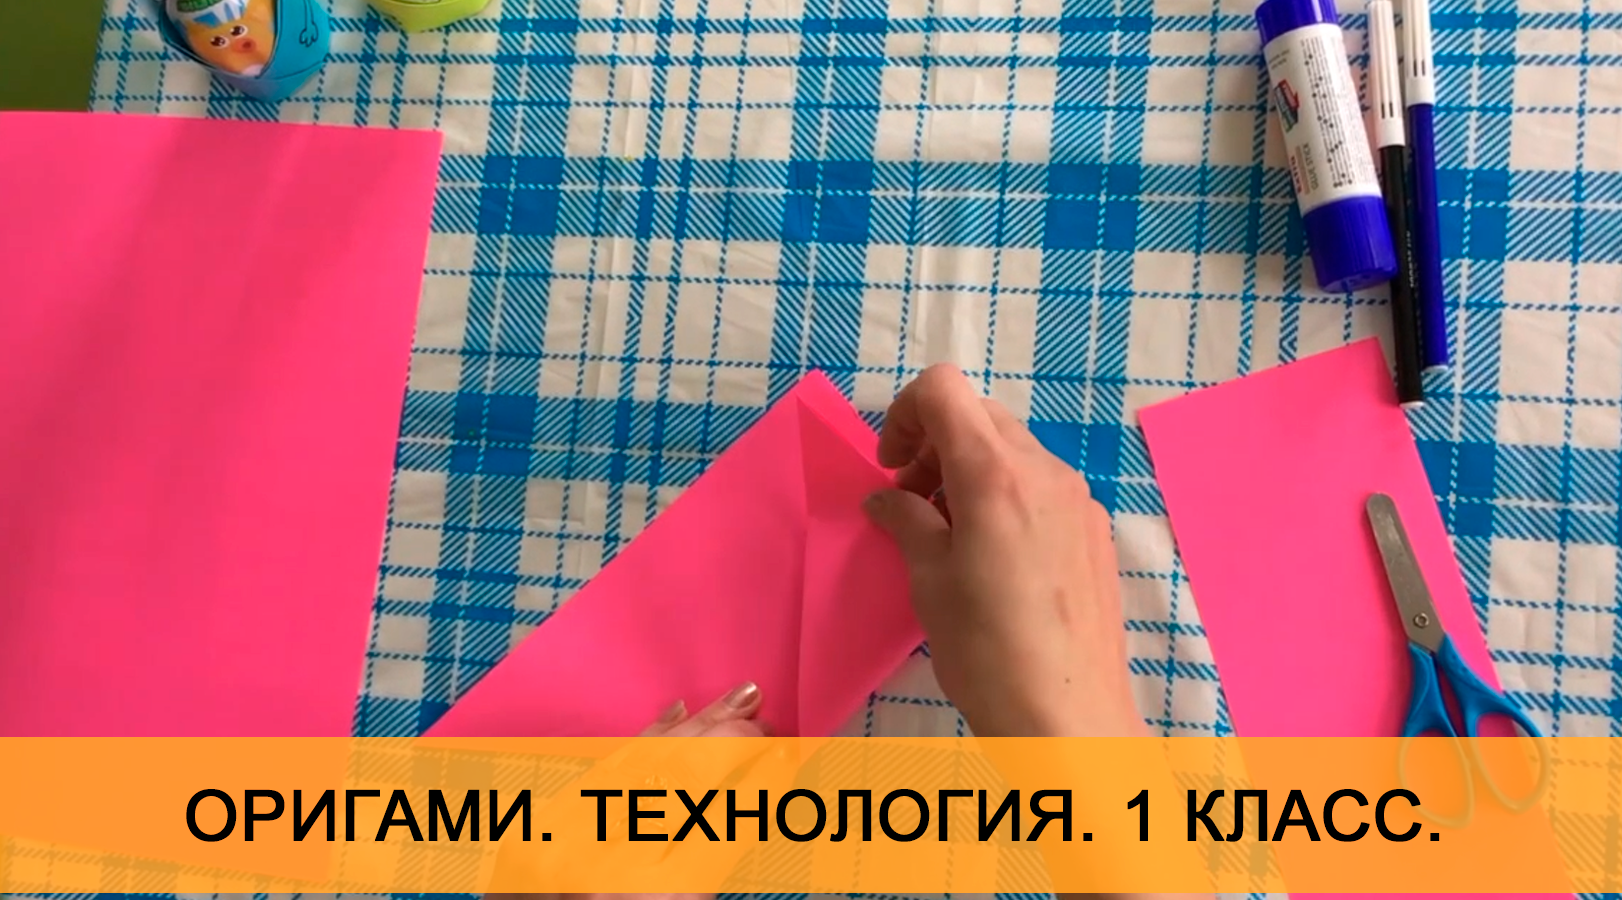 Оригами "Пасхальный зайчик". Урок технологии. 1 класс. Онлайн школа "Стоик" от CleverOne